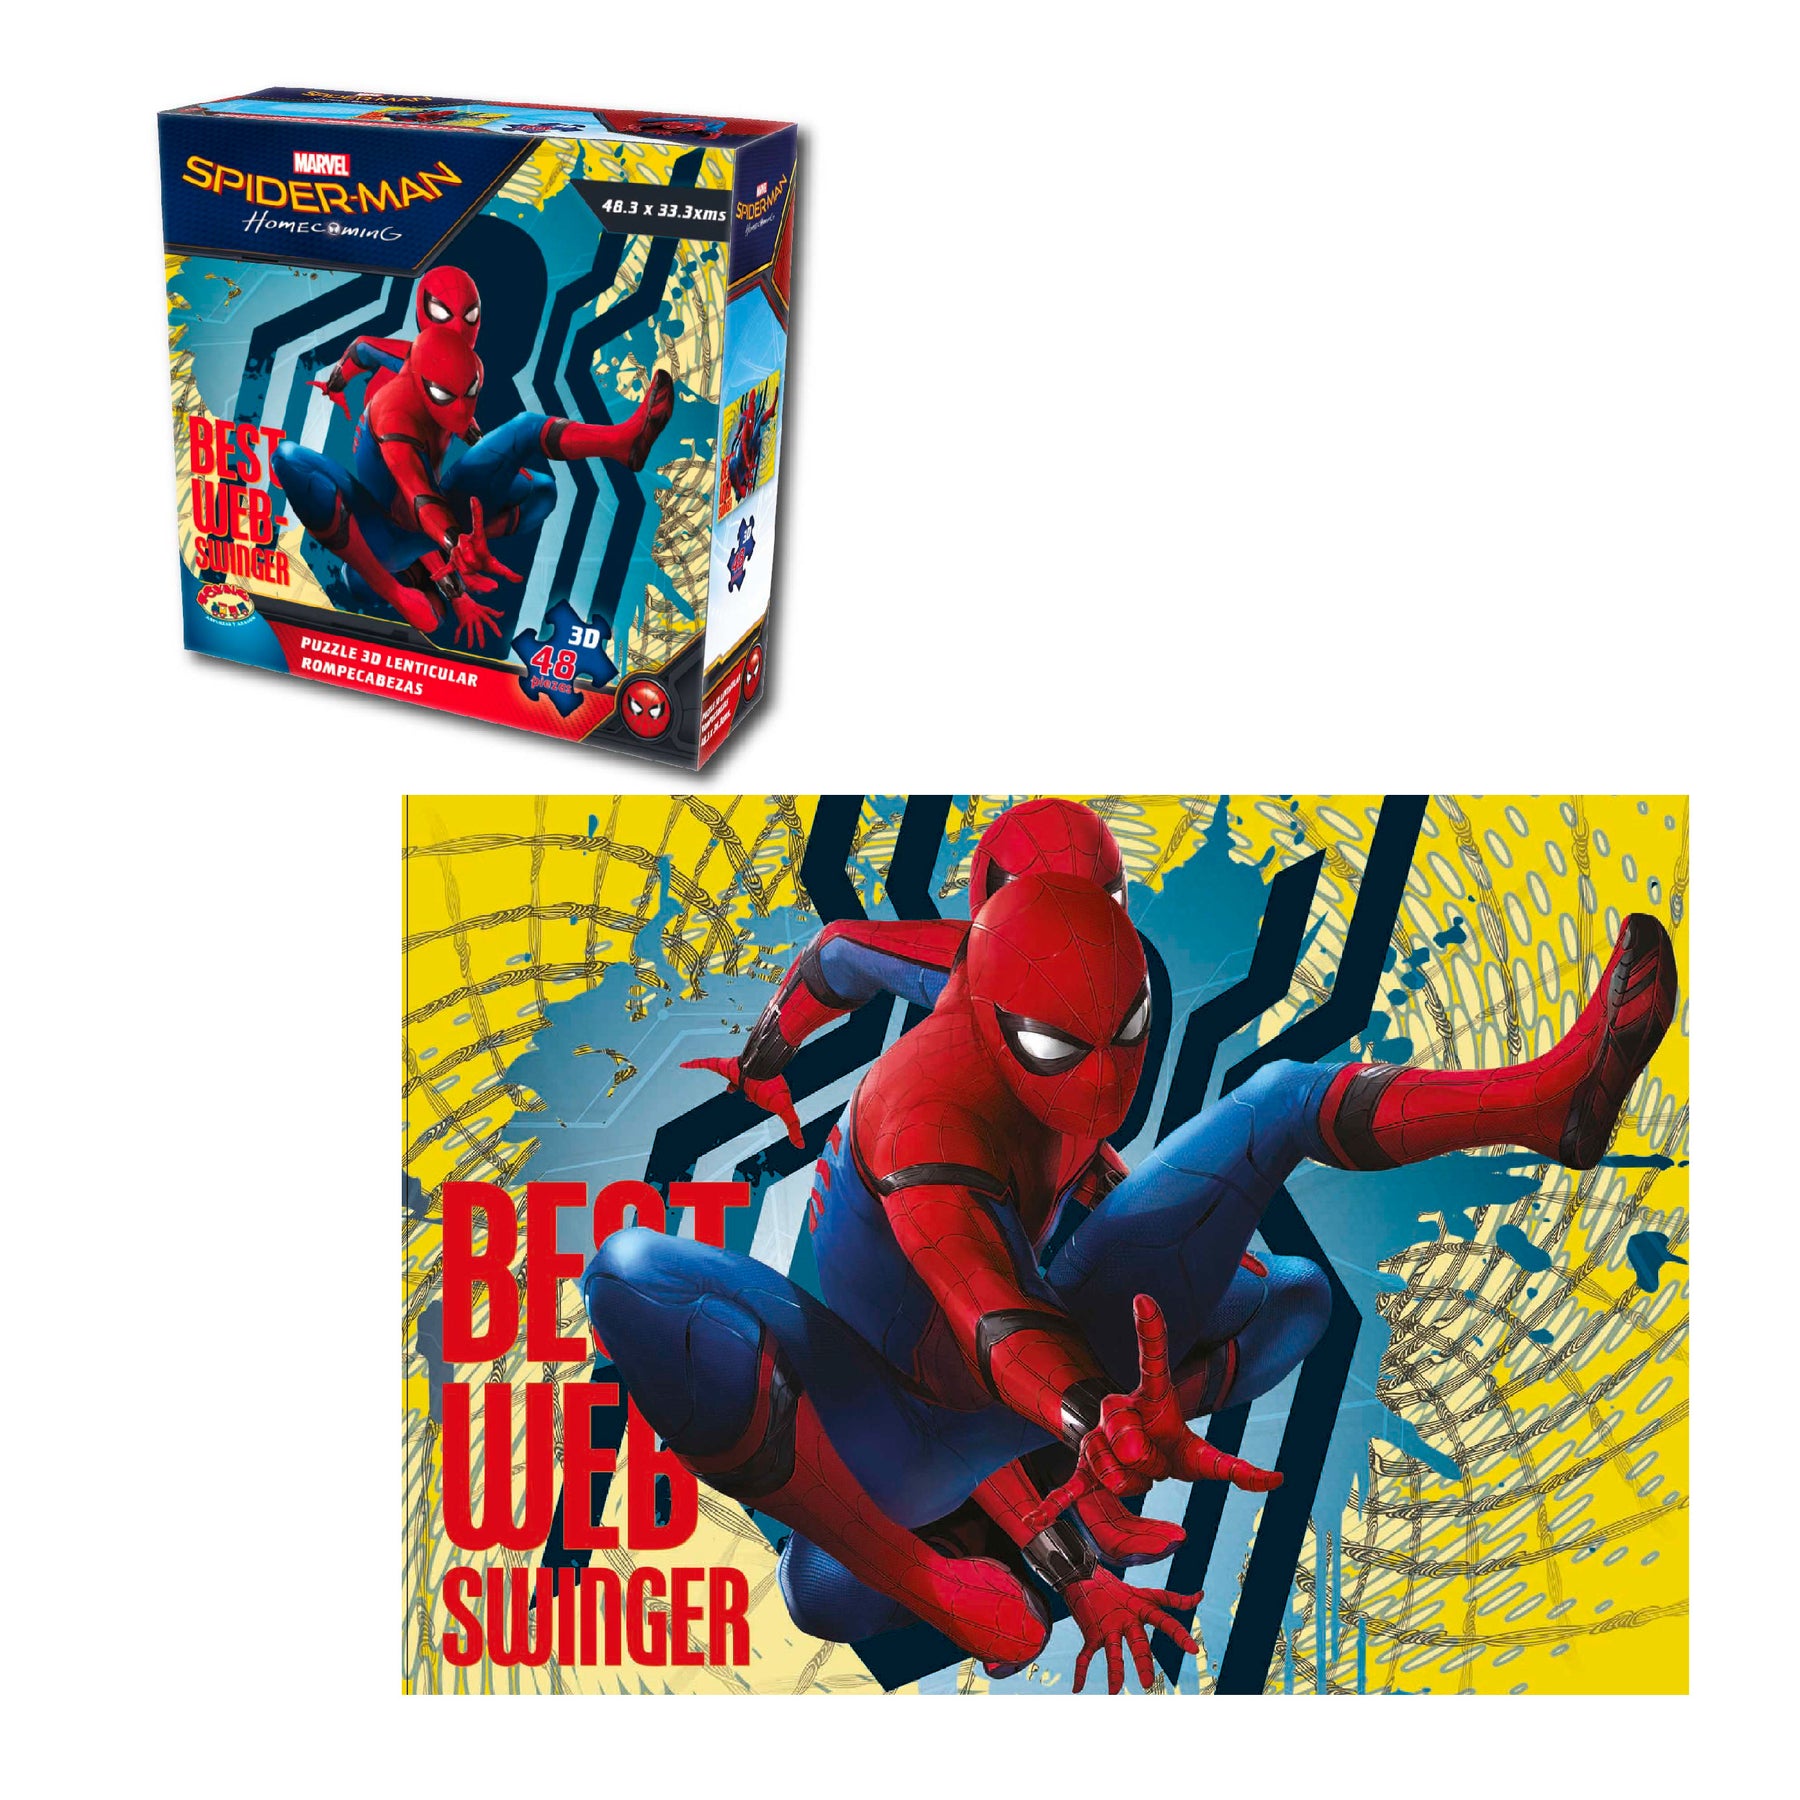 Spider-Man - Puzzle lenticulaire 3D de 48 pièces